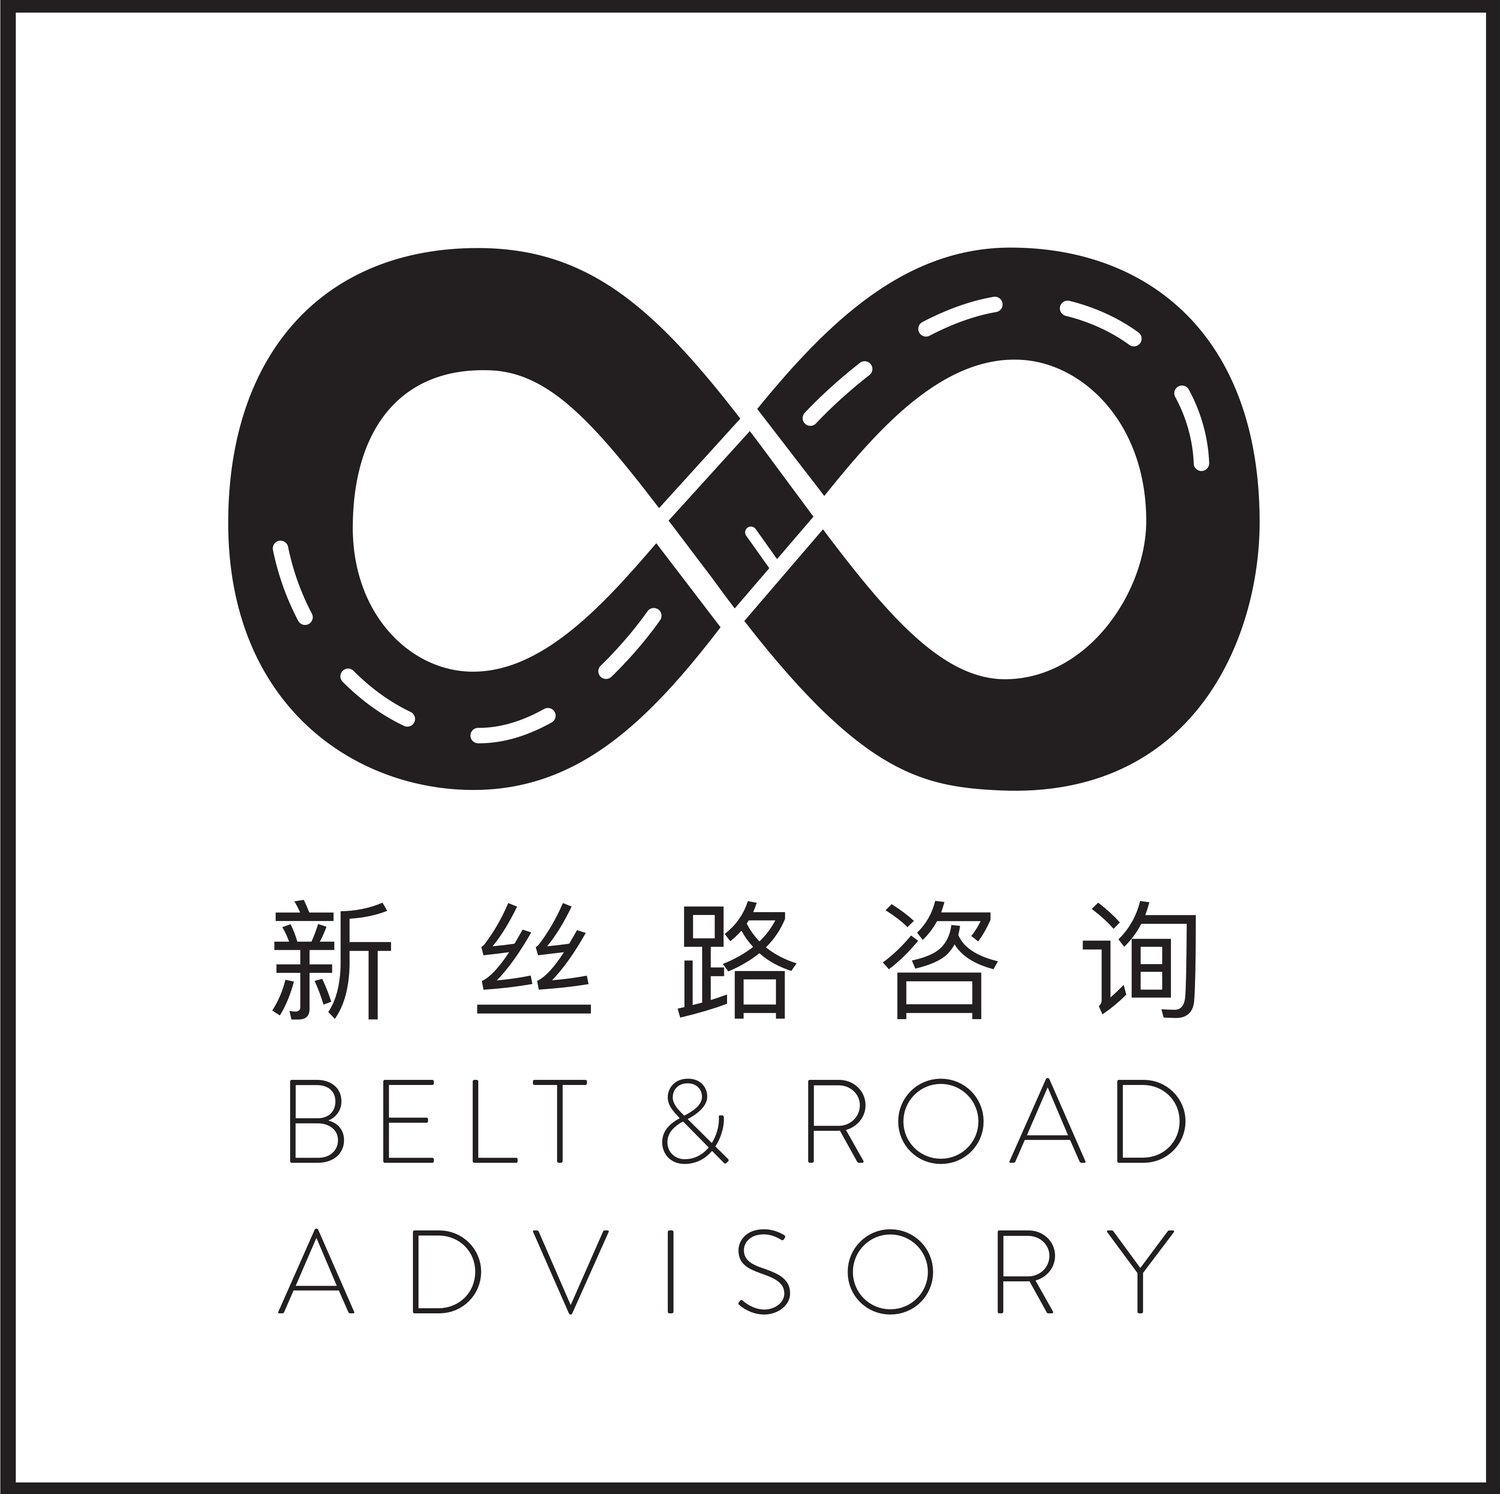 Belt and Road Advisory